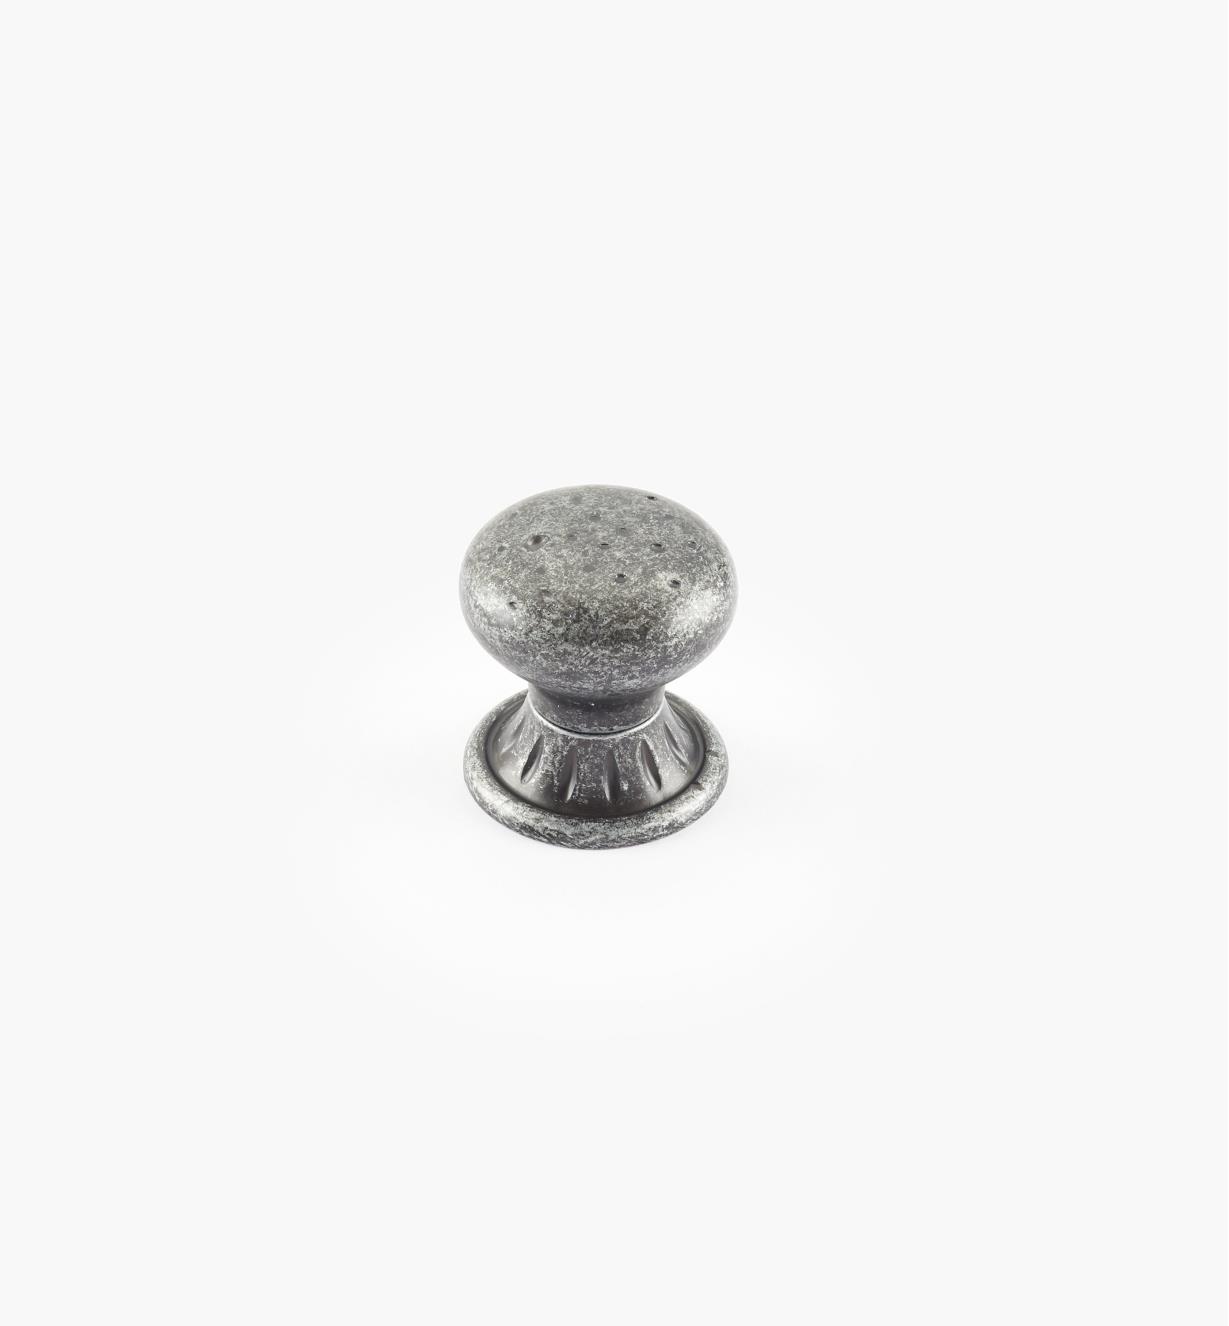 02A2624 - Ambrosia 1 1/4" x 1 1/4" Wrought Iron Round Knob